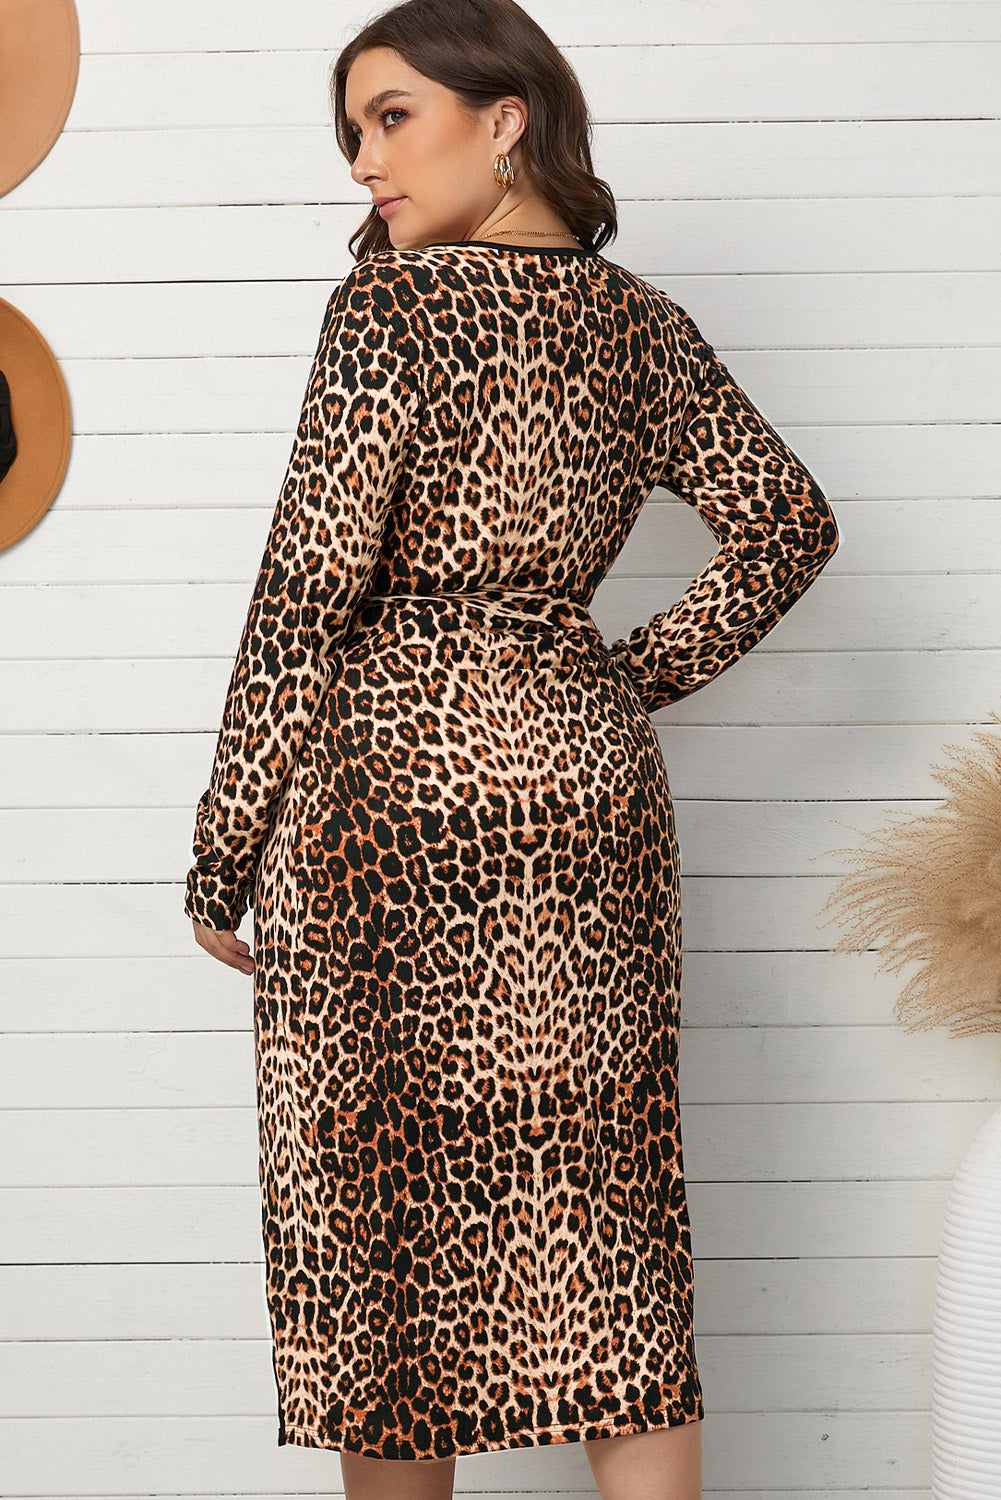 Robe Grande Taille Femme Moderne Leopard Portefeuille